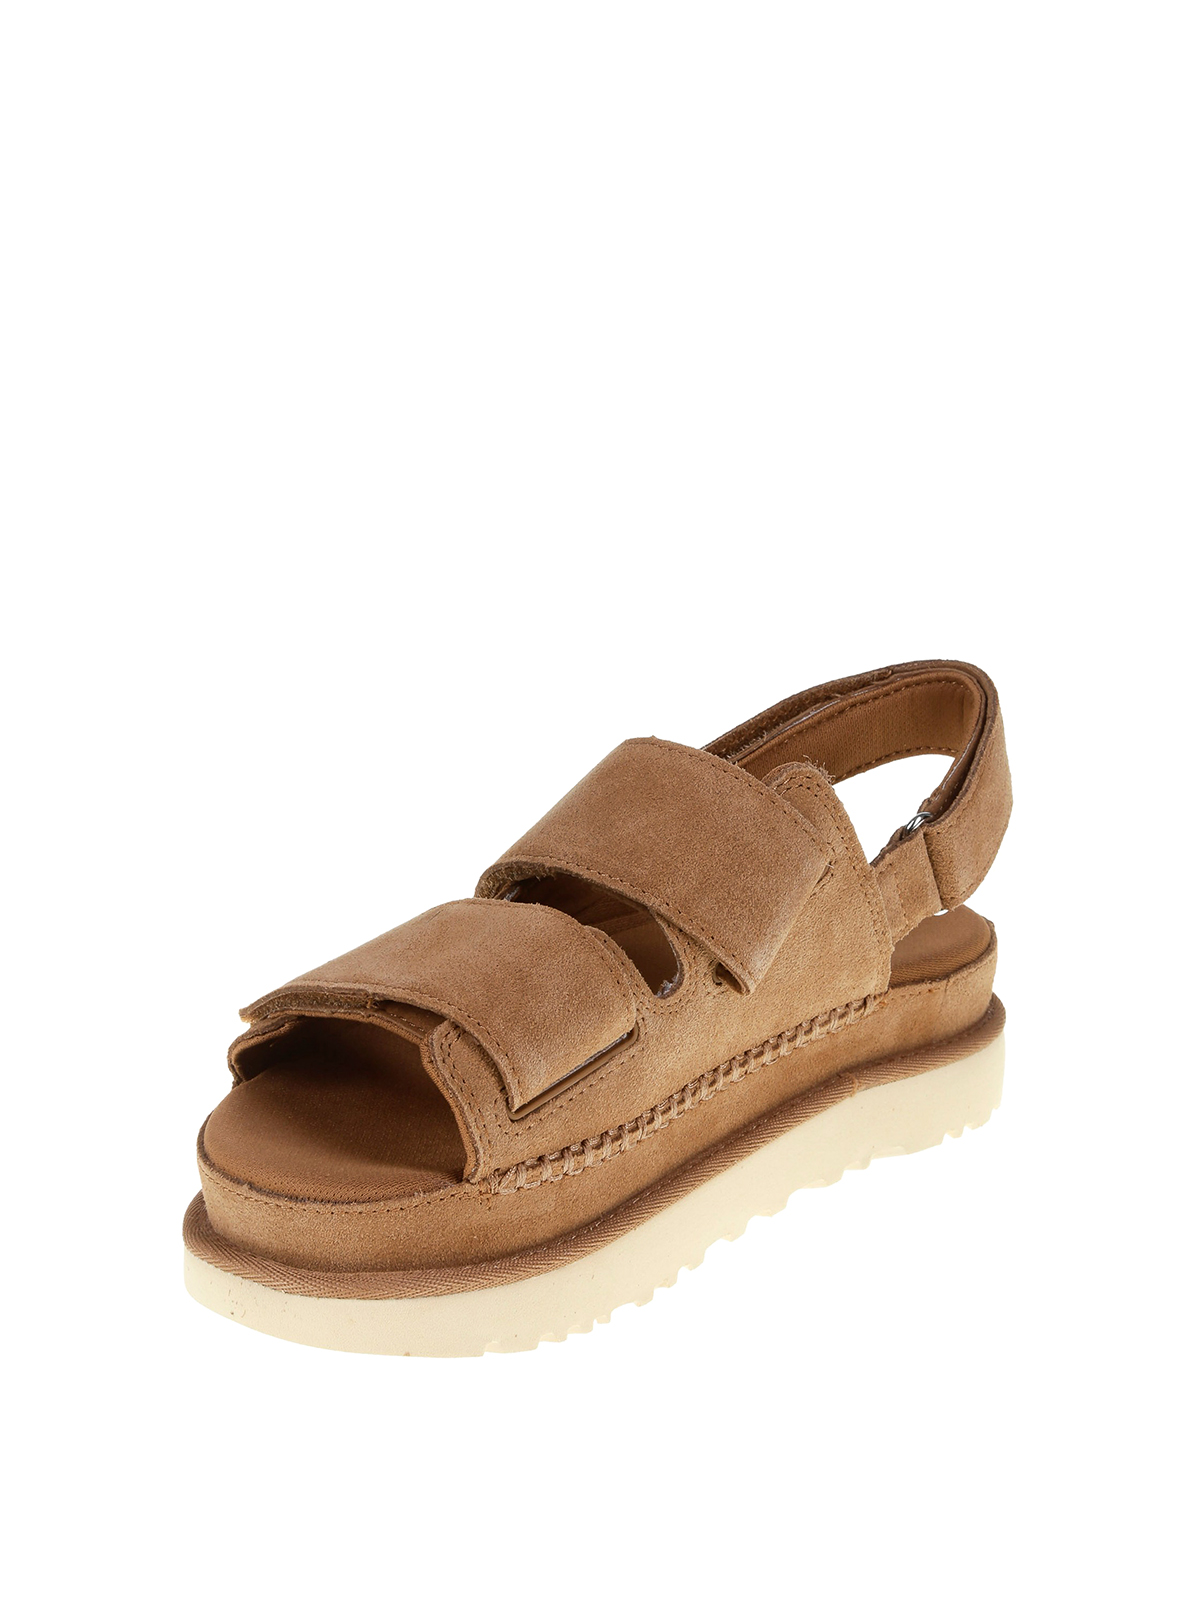 Sandals Ugg - Goldenstar sandals in suede rips - 1141493WCHESTNUT